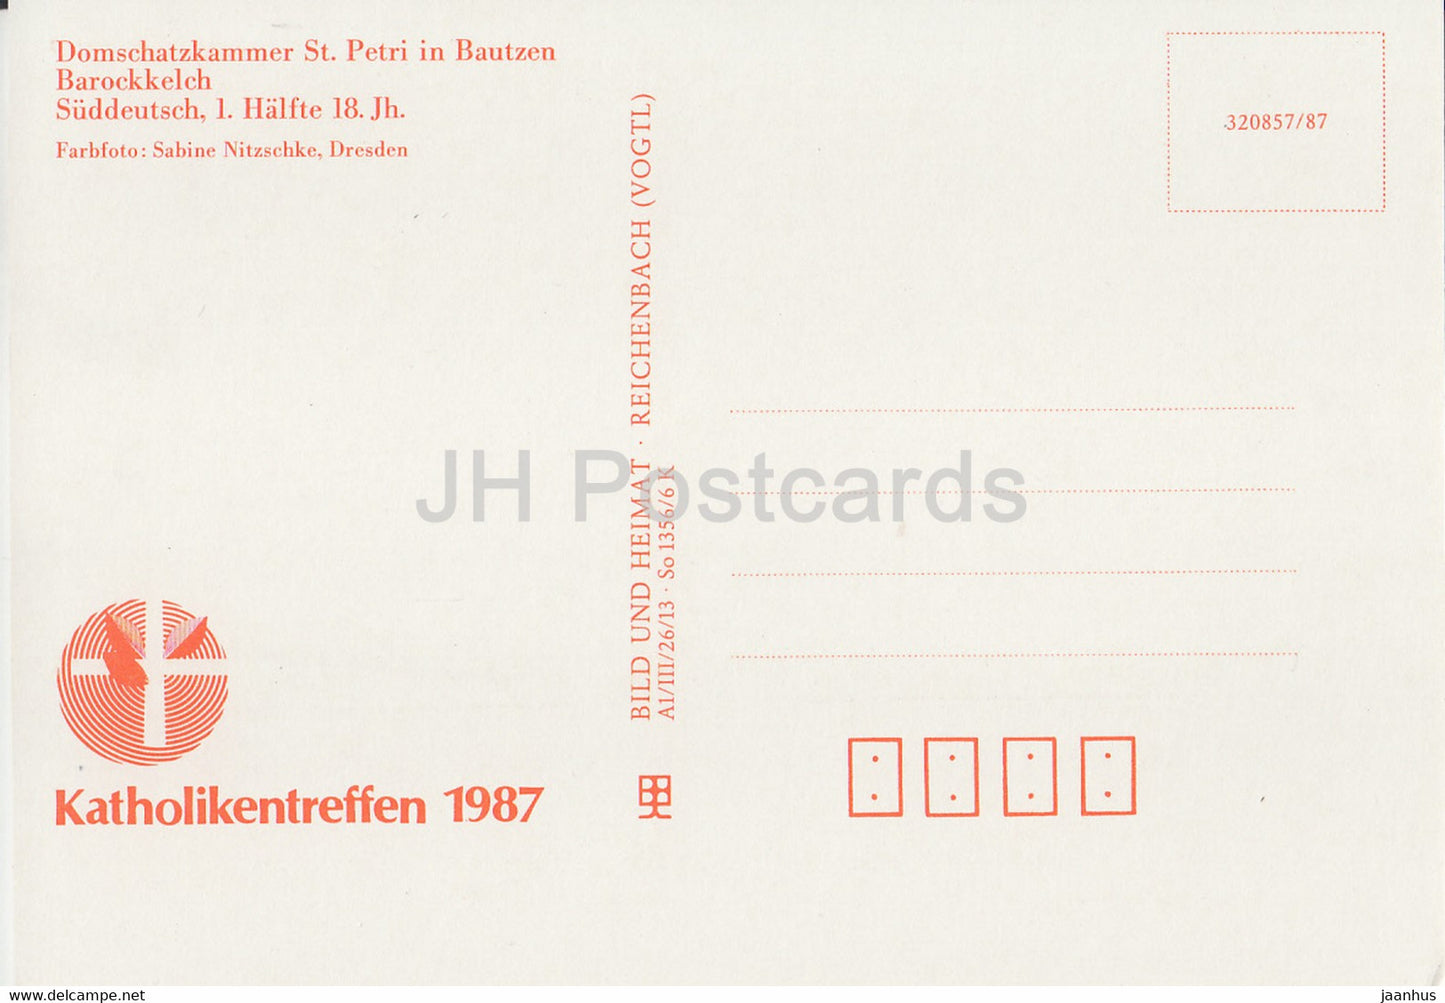 Barockkelch - Kelch - Domschatzkammer St. Petri in Bautzen - 1987 - DDR Deutschland - unbenutzt